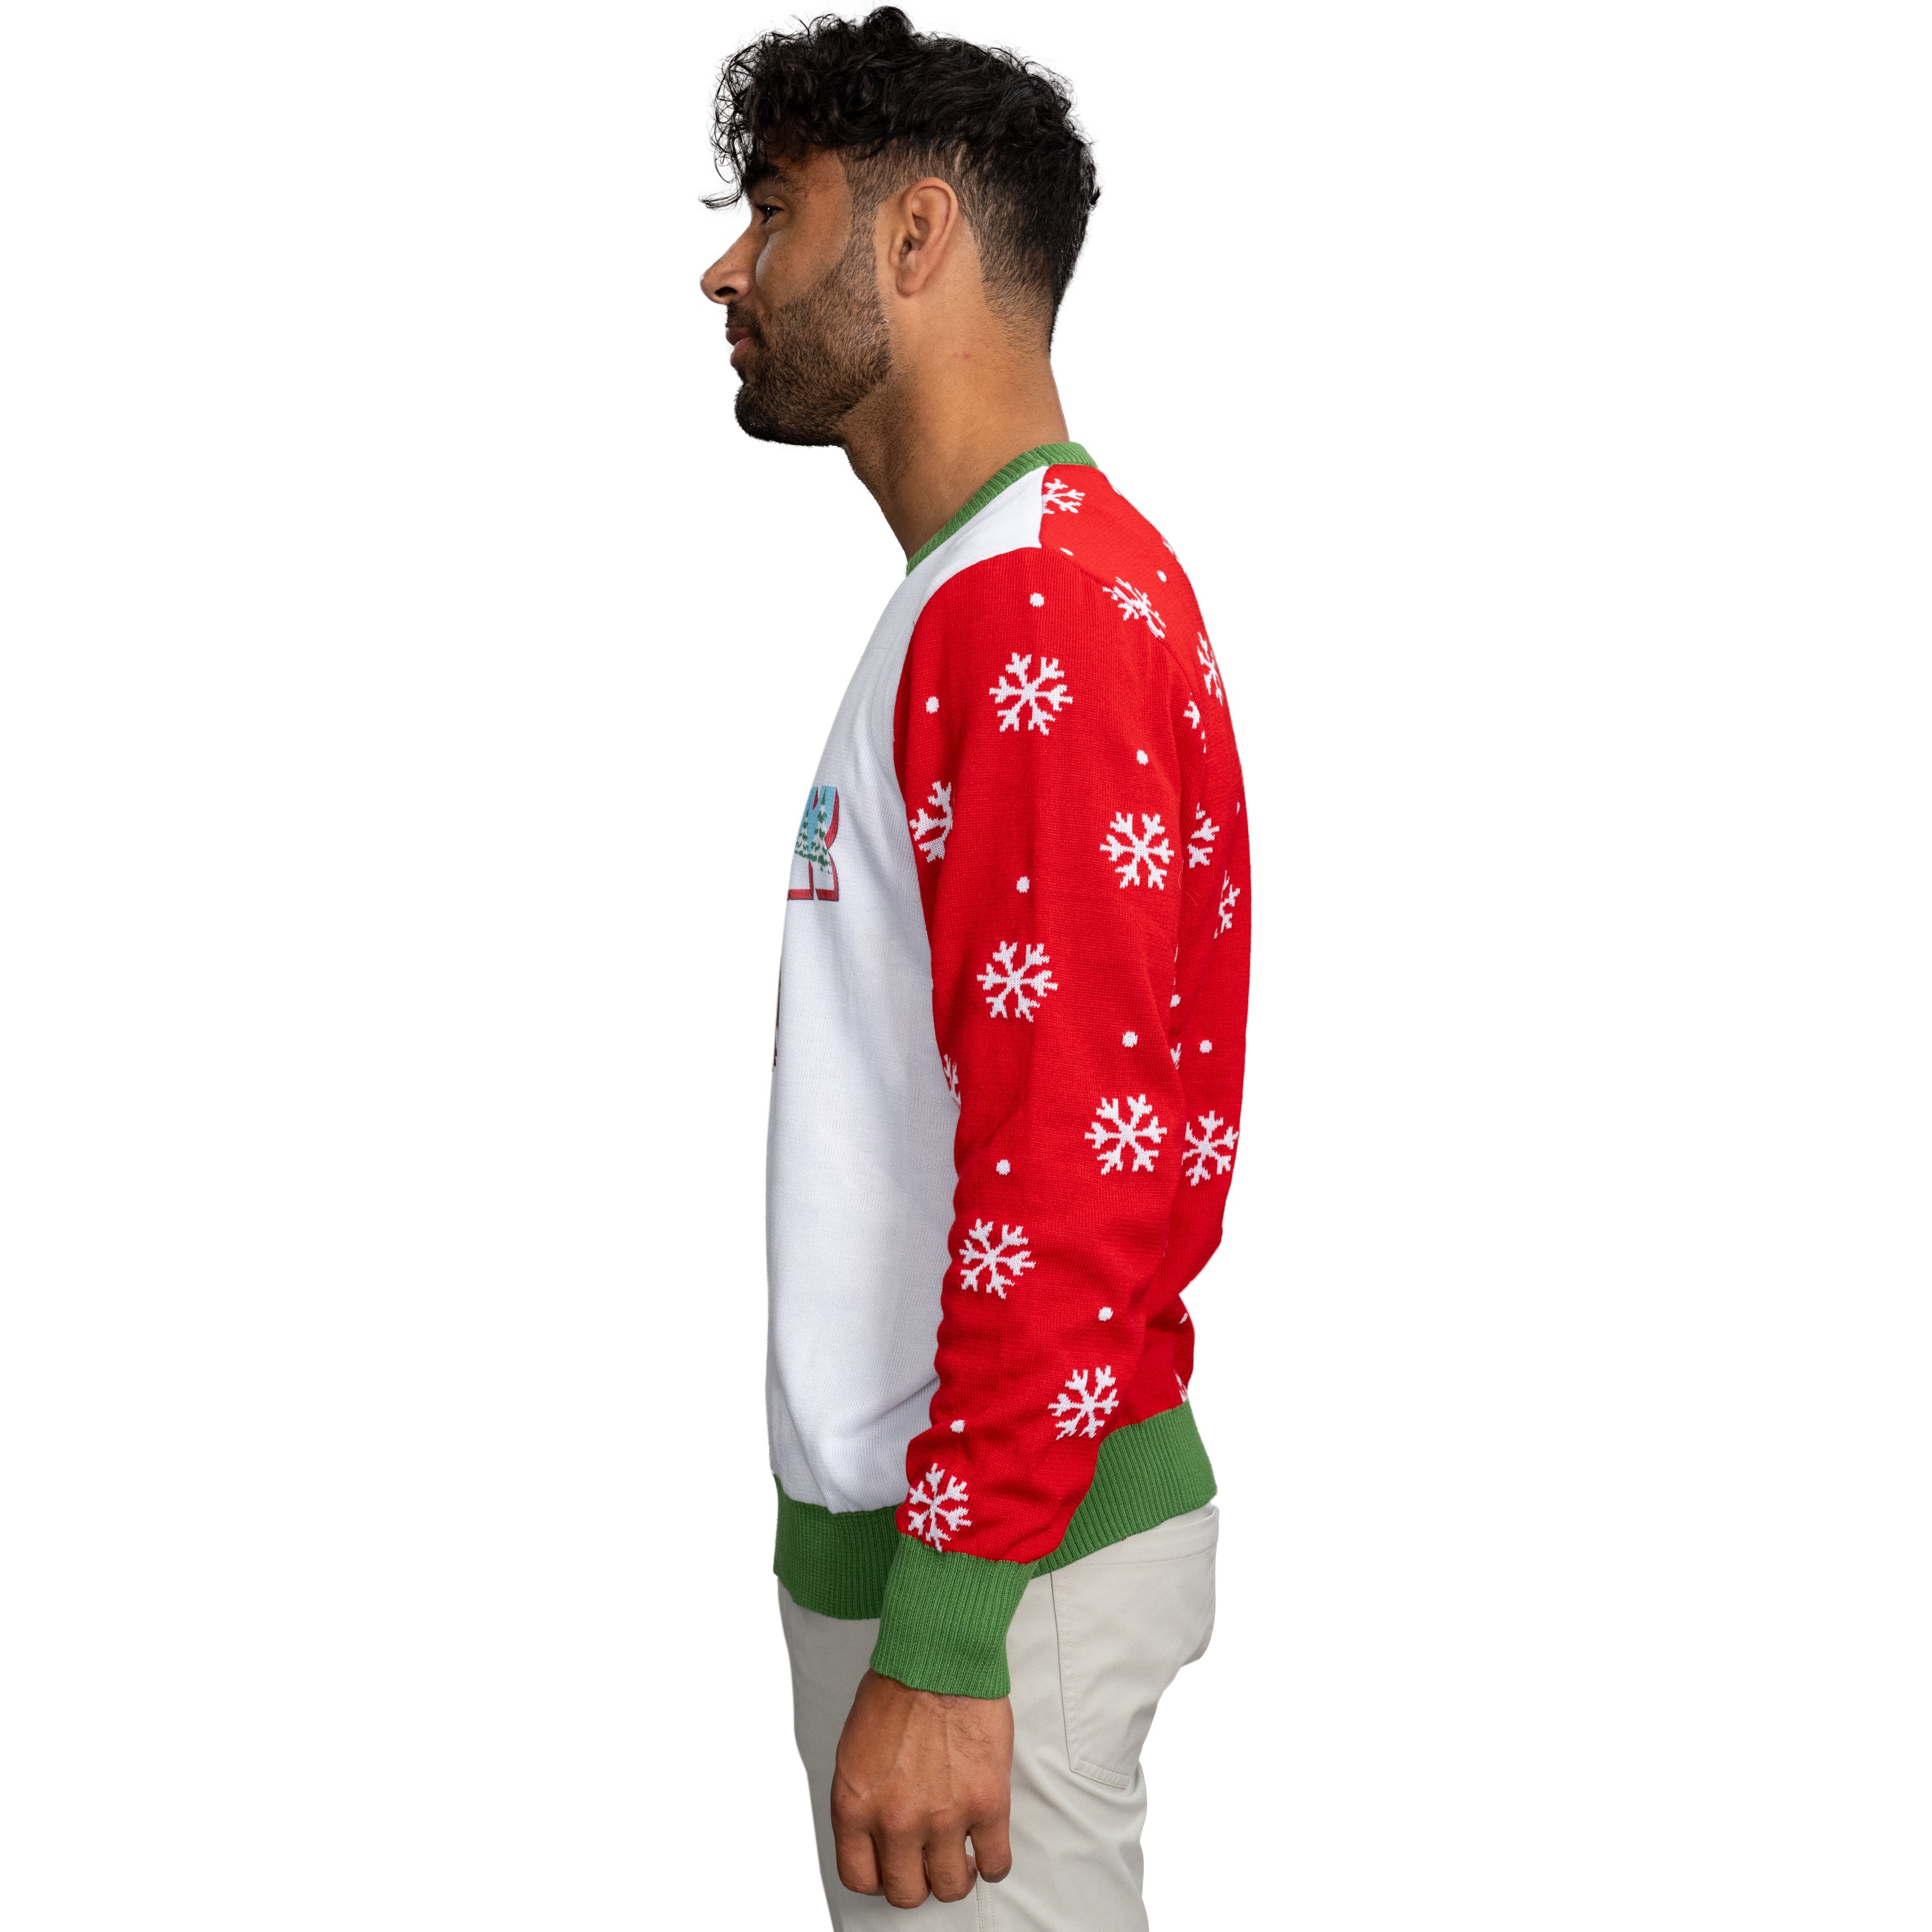 Season's Greetings South Park Christmas Sweater